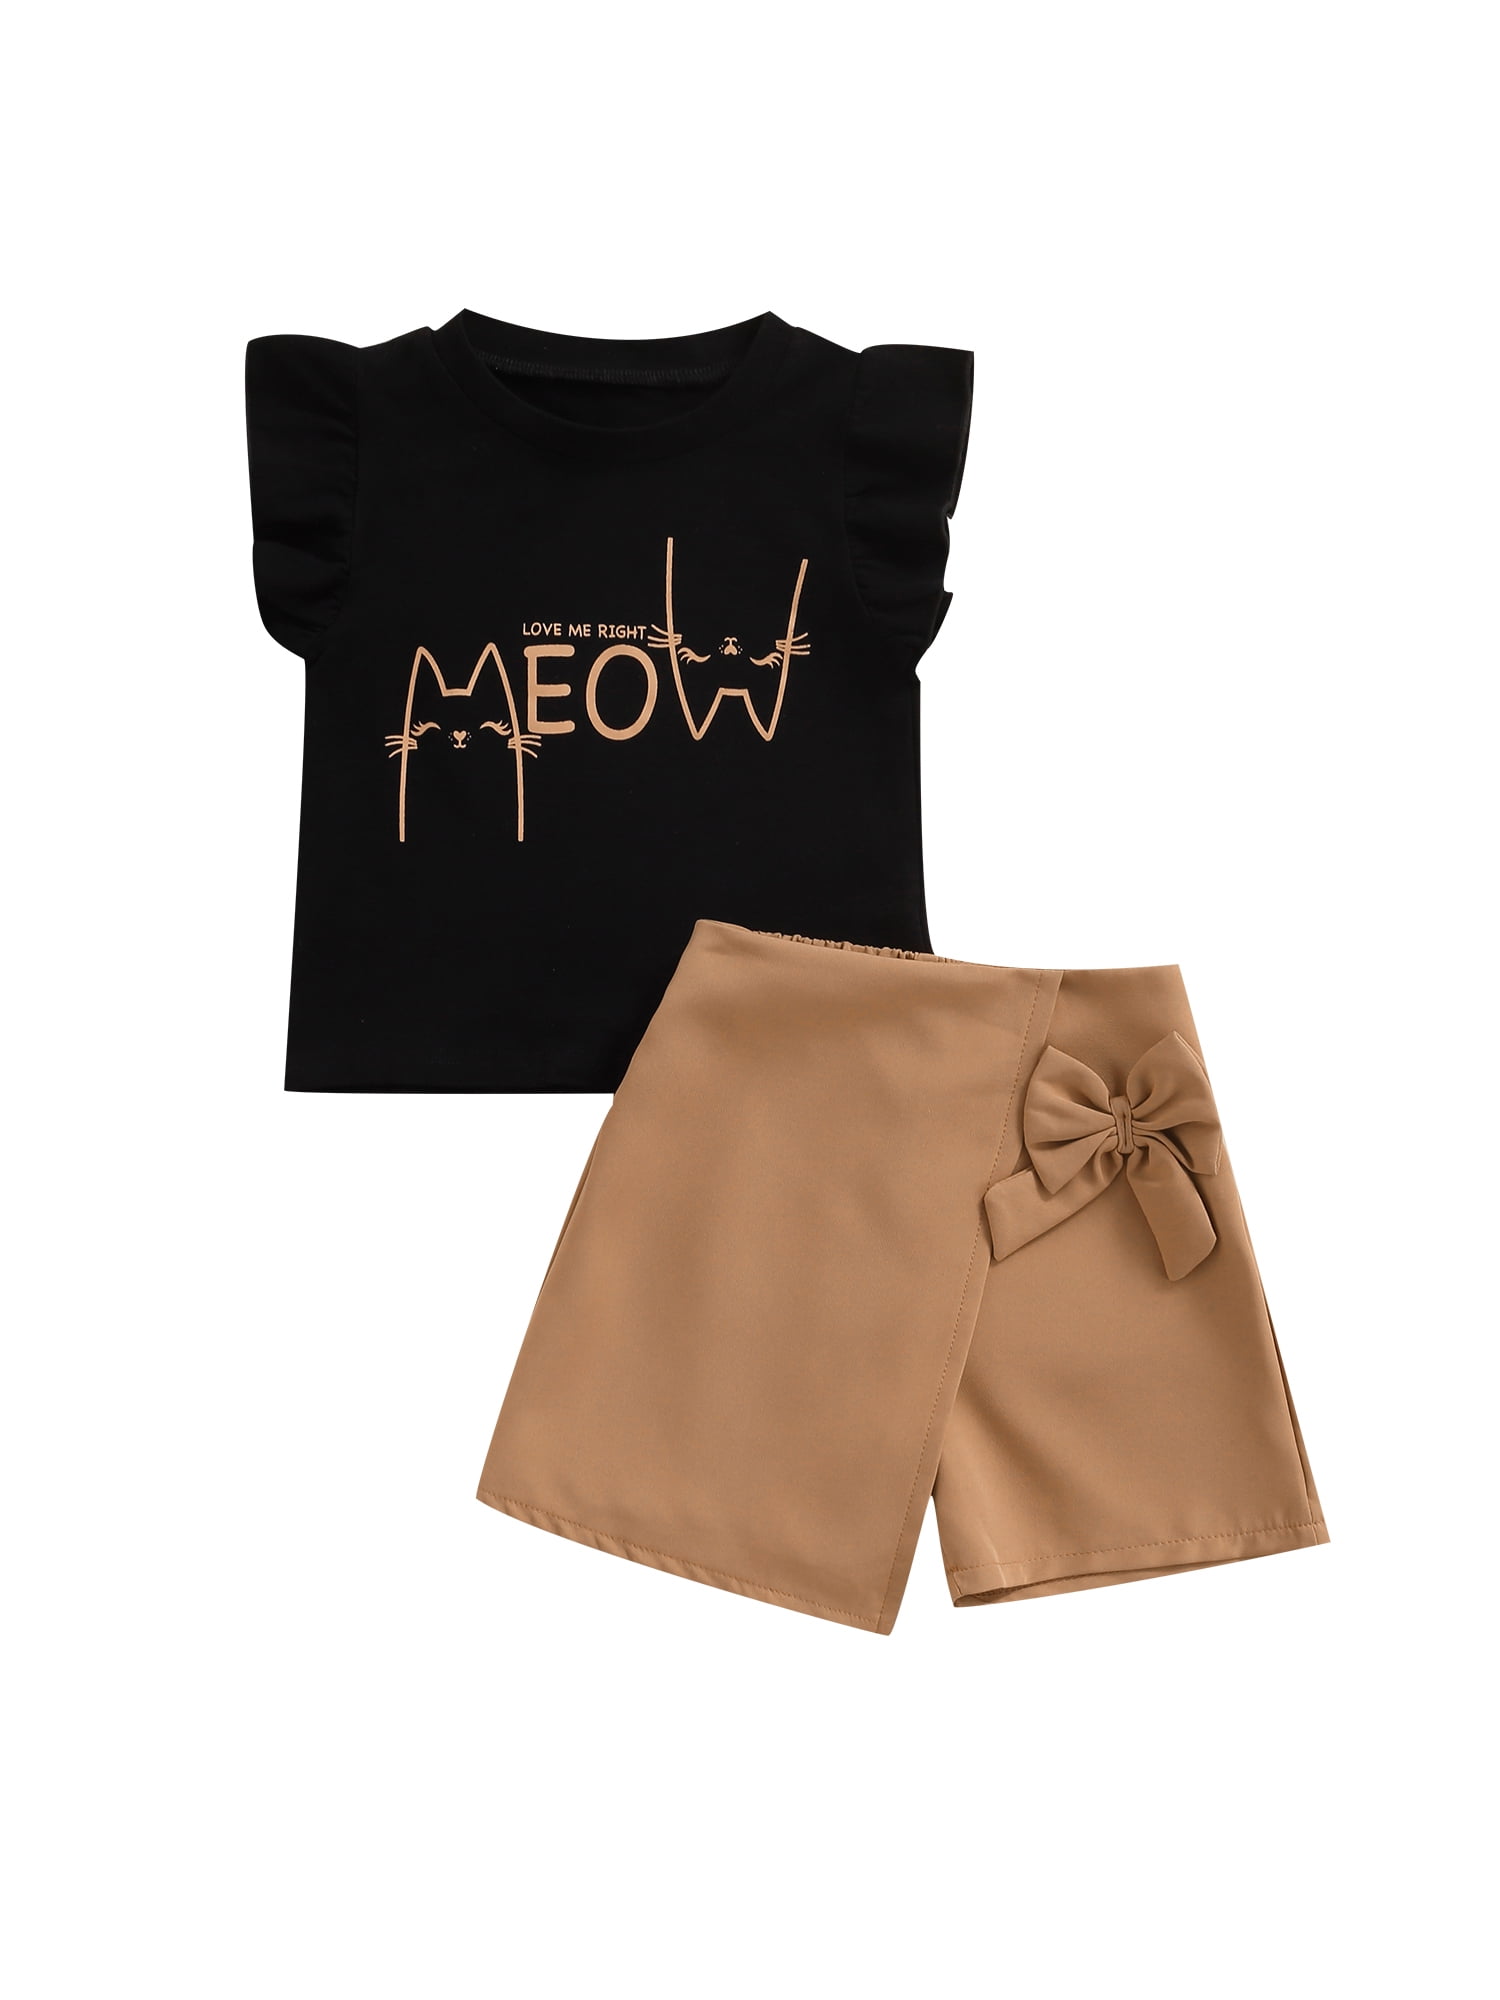 Girls T-Shirt Cute Tees Bowknot Skirt Sets with Purse 3 Piece Cartoon Crewneck Short Sleeve 